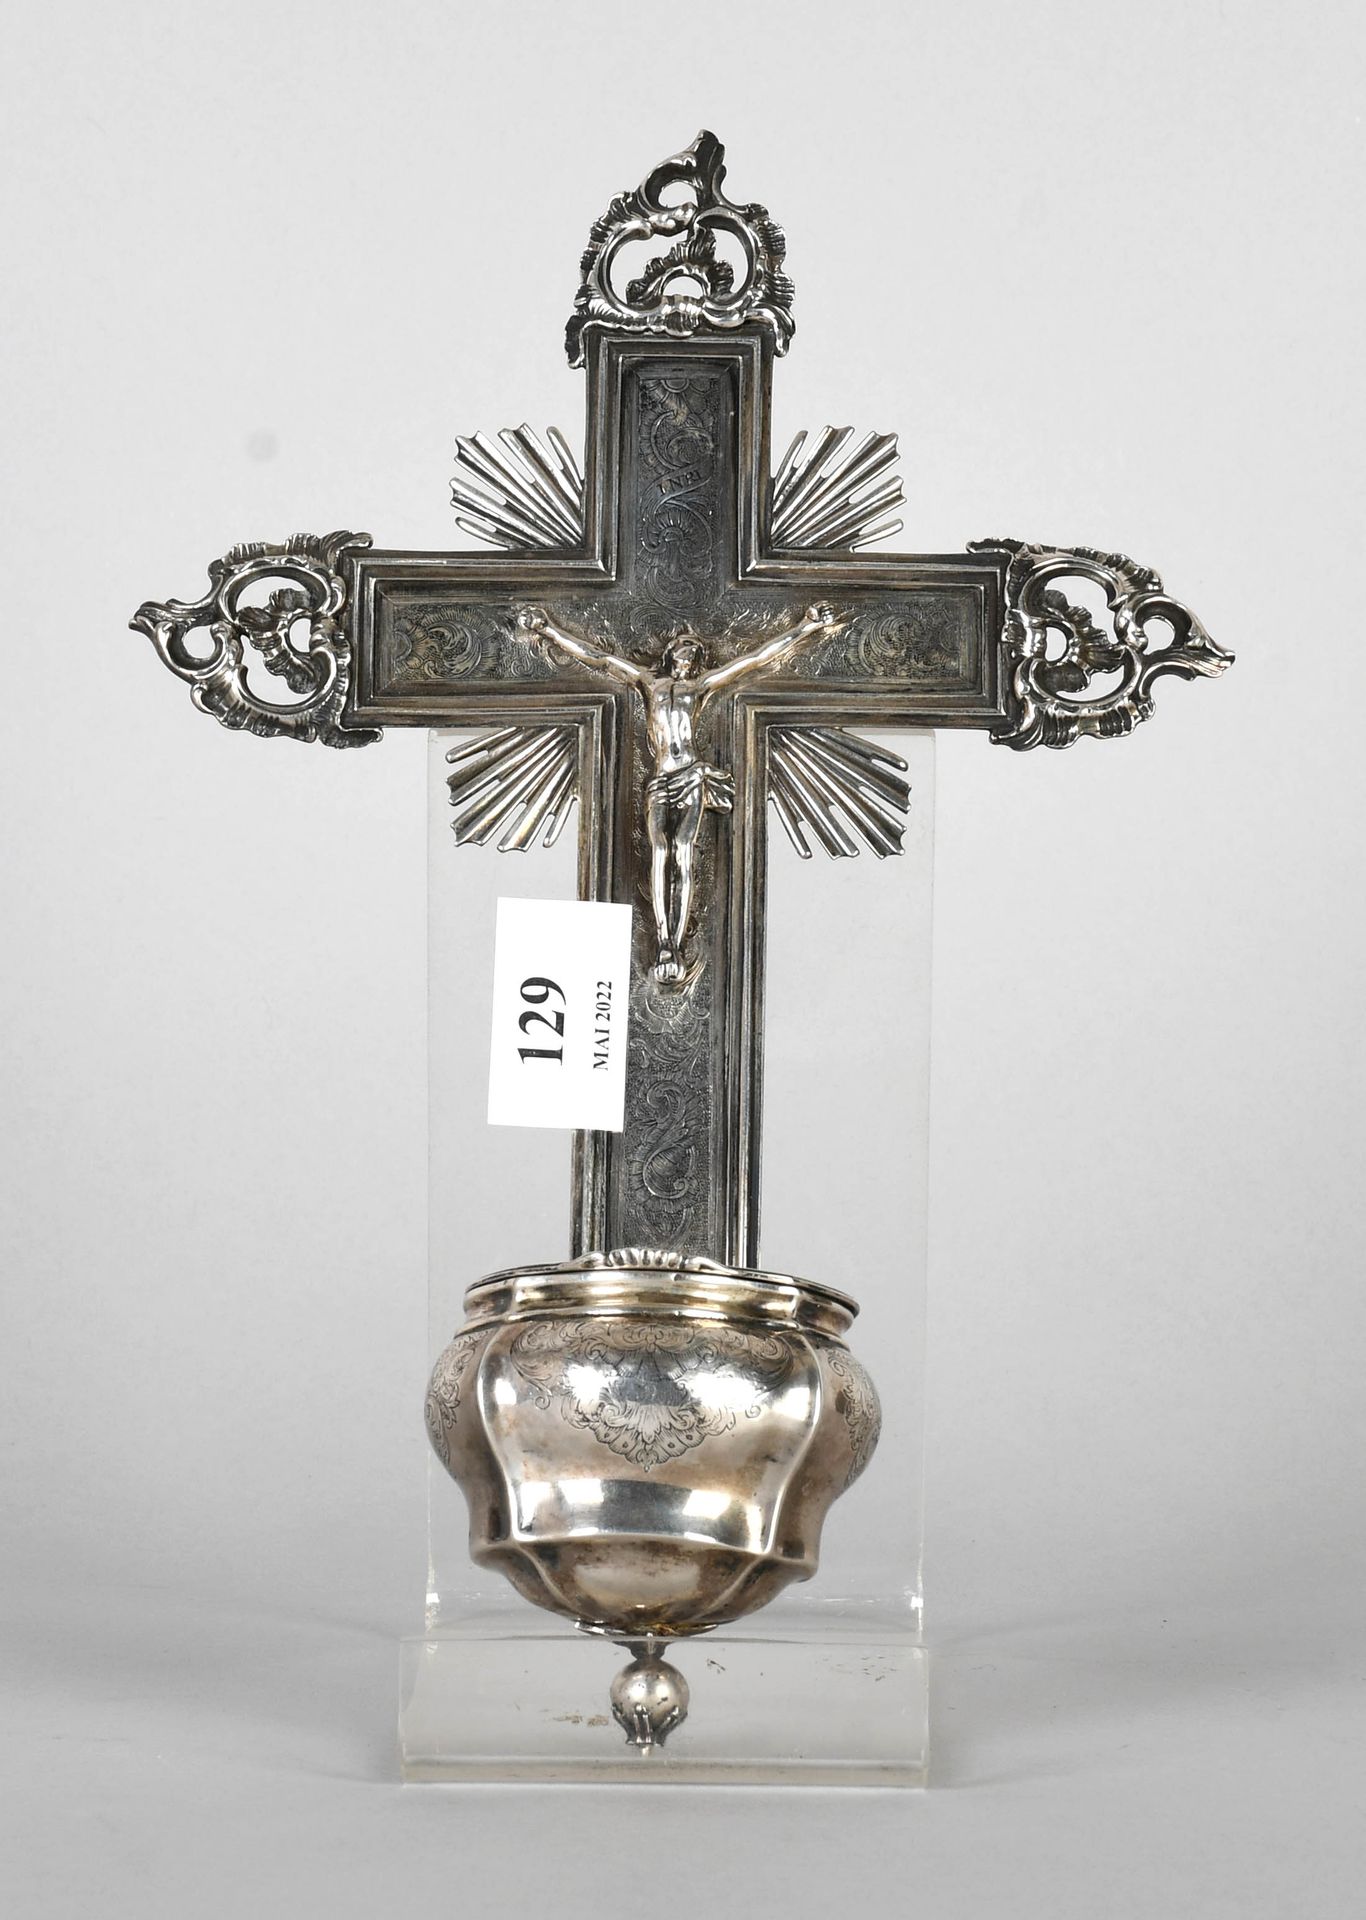 Null 布鲁塞尔，18世纪，摄政时期

悬空的錾花银瓶。

高度：28厘米。